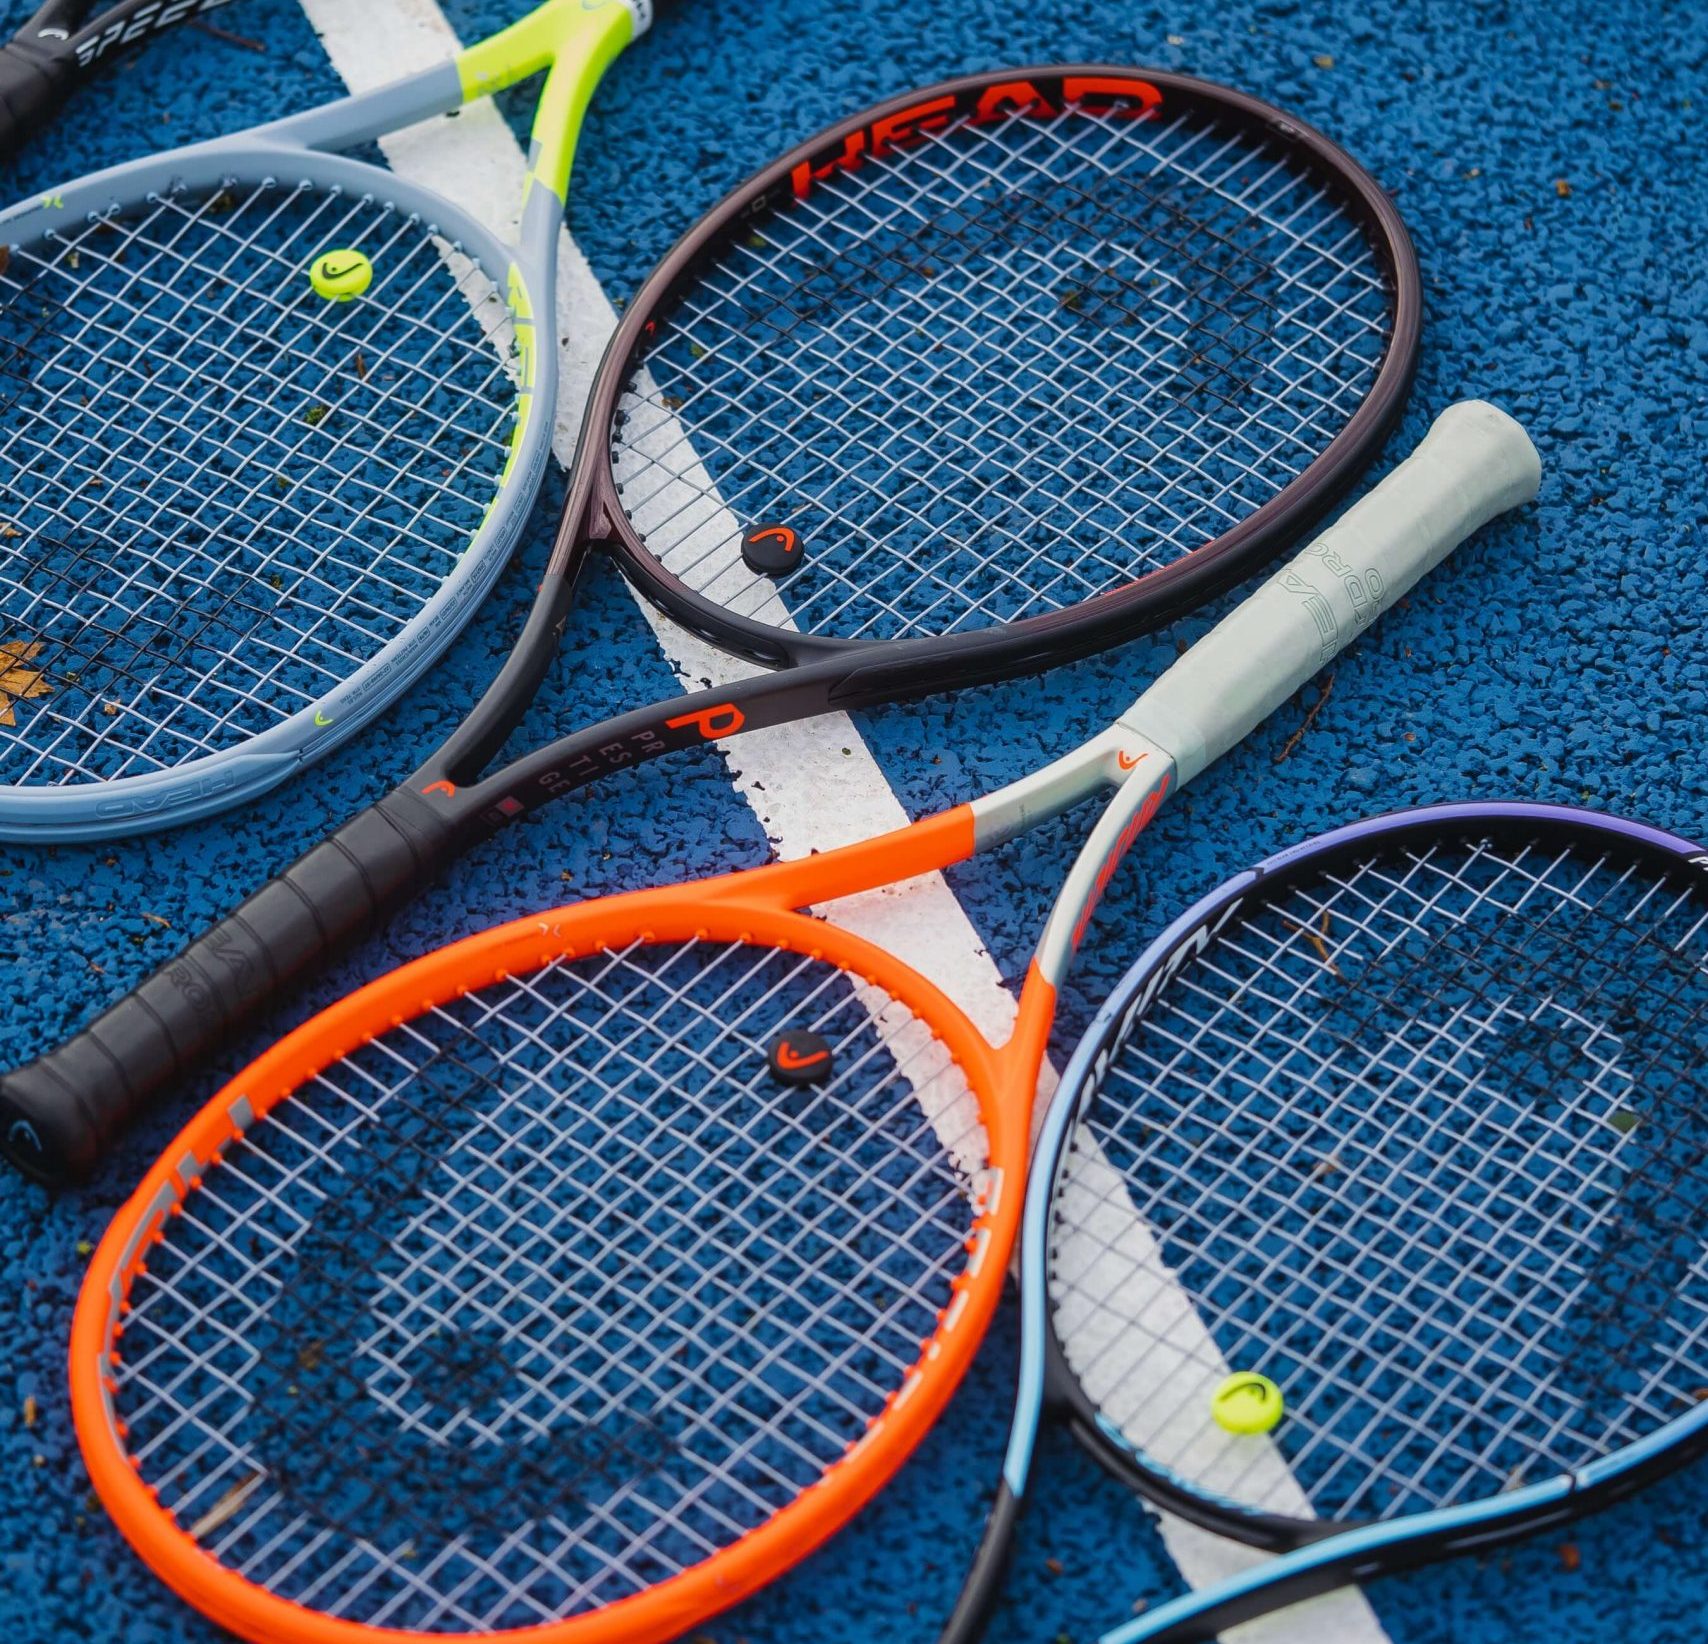 História do Tênis: conheça um pouco mais sobre essa modalidade que